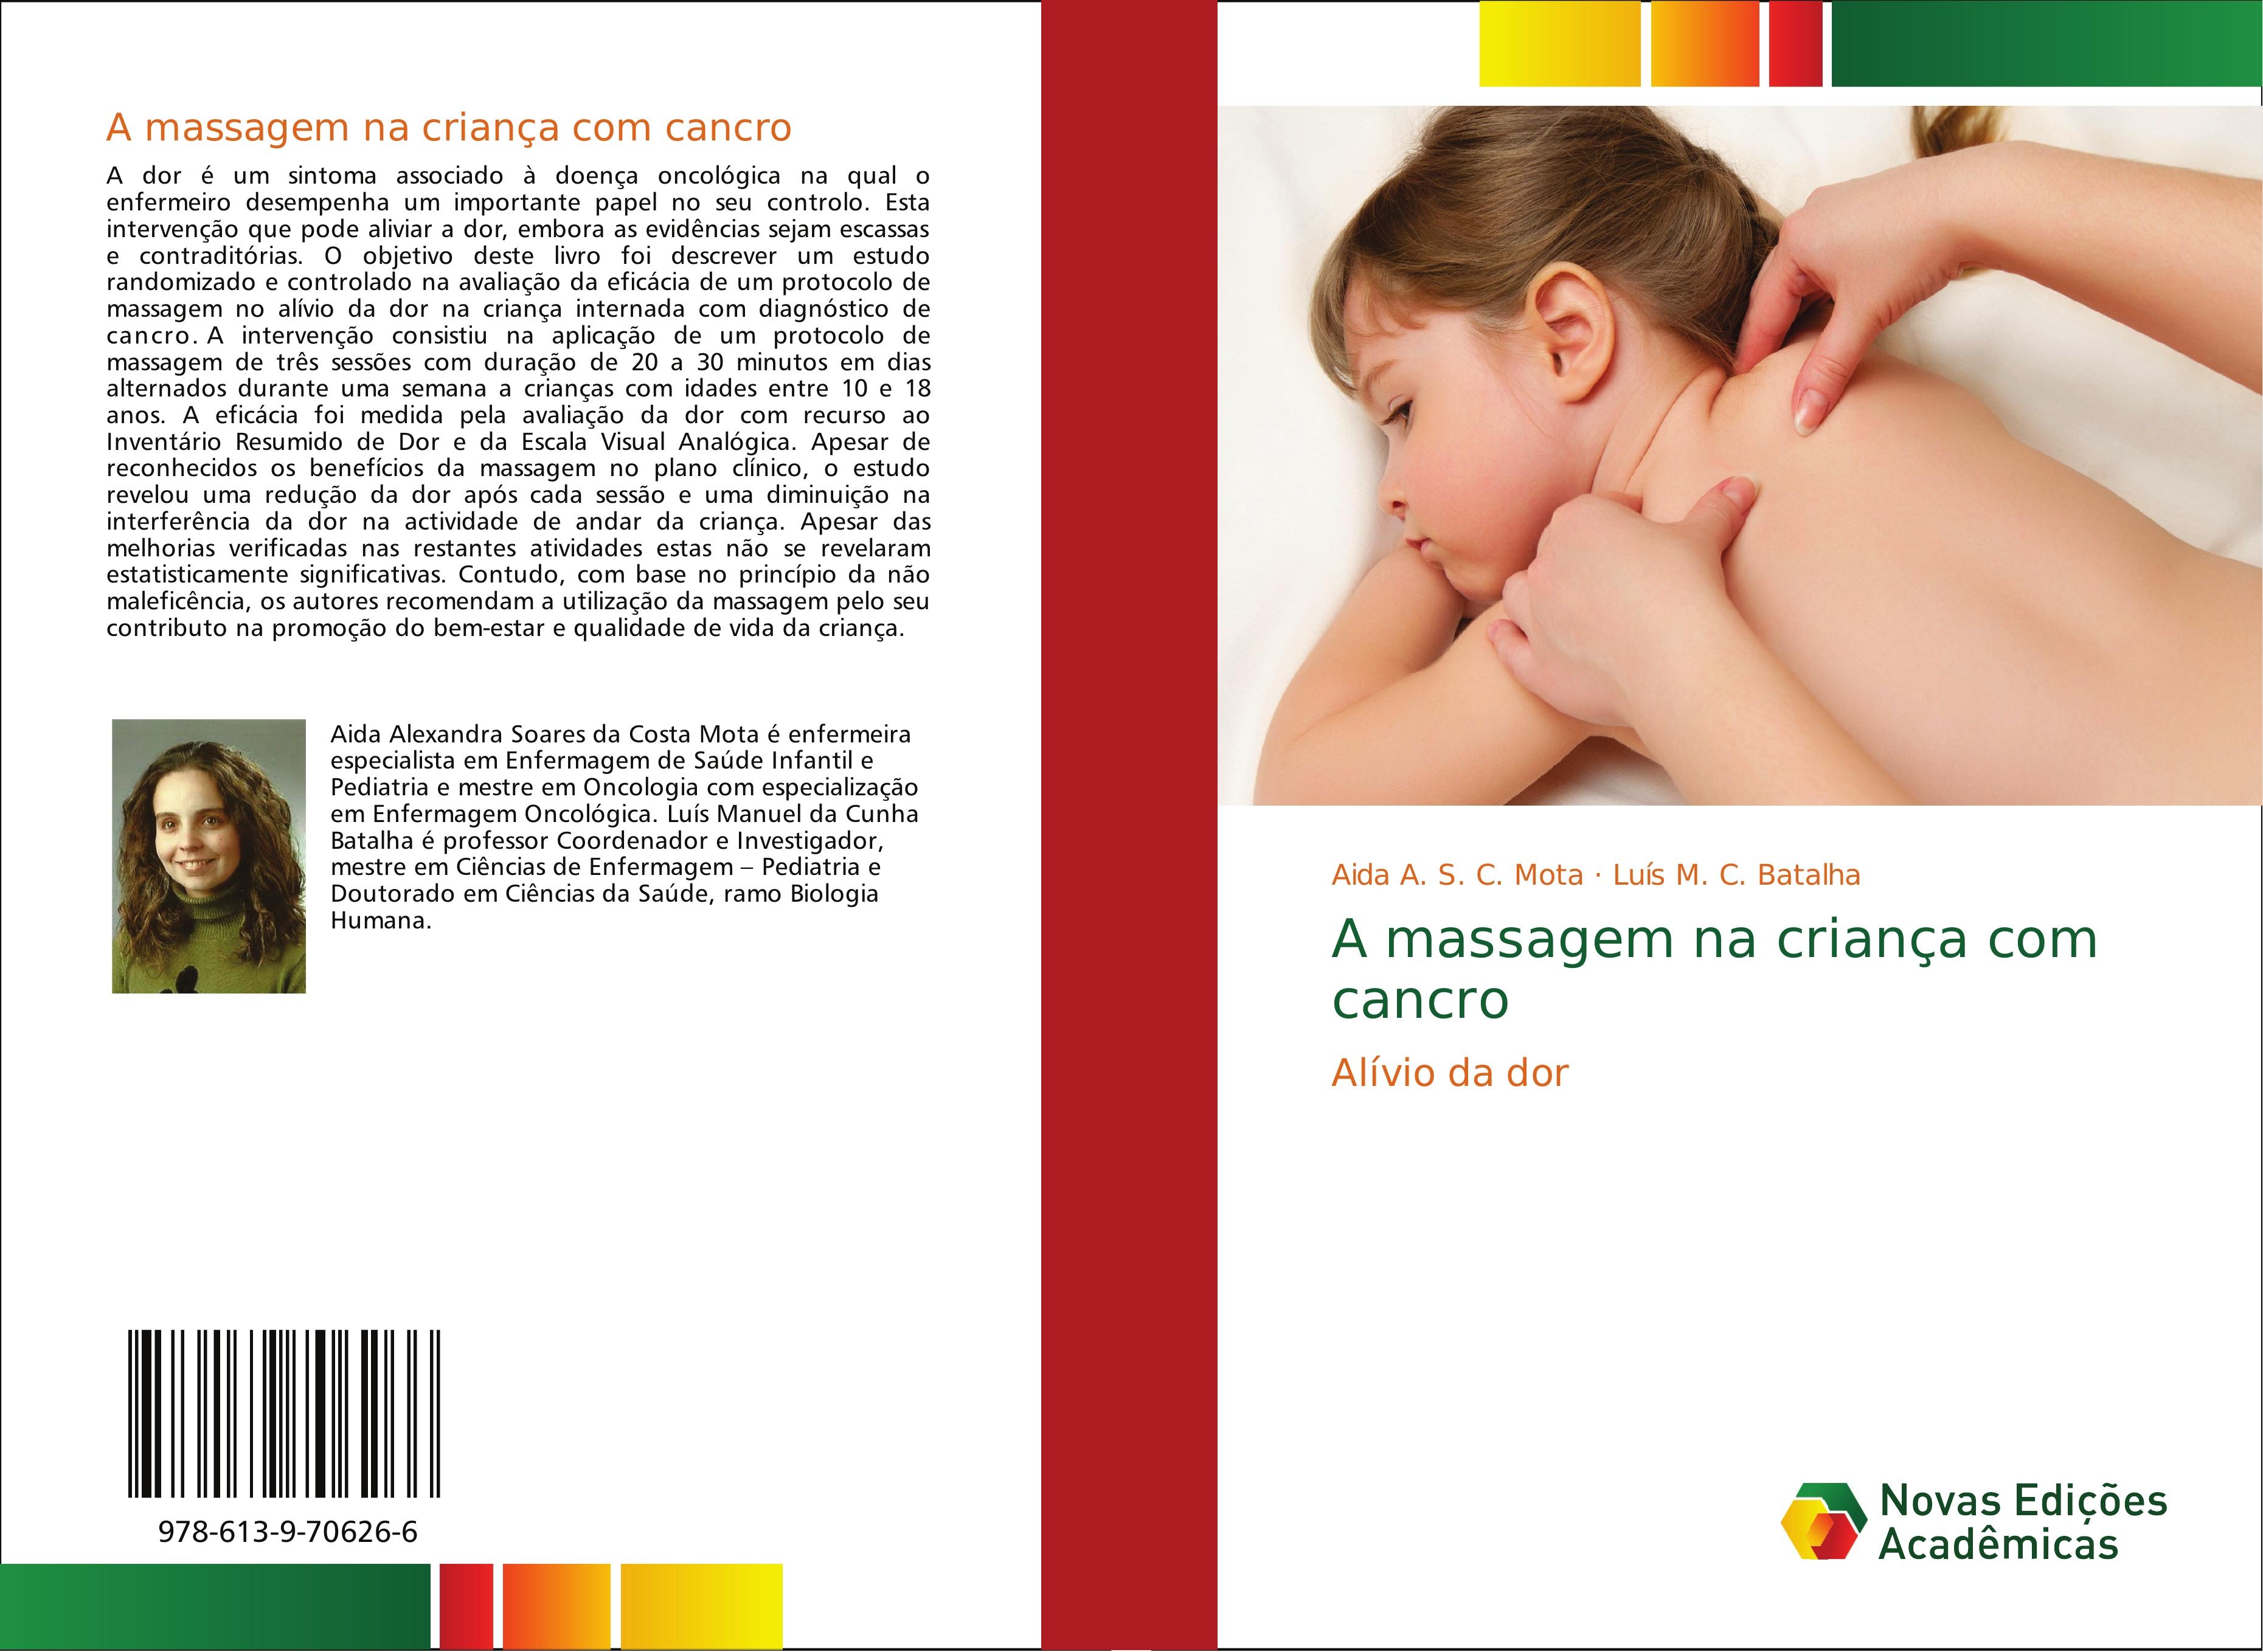 A massagem na criança com cancro - Aida A. S. C. Mota Luís M. C. Batalha